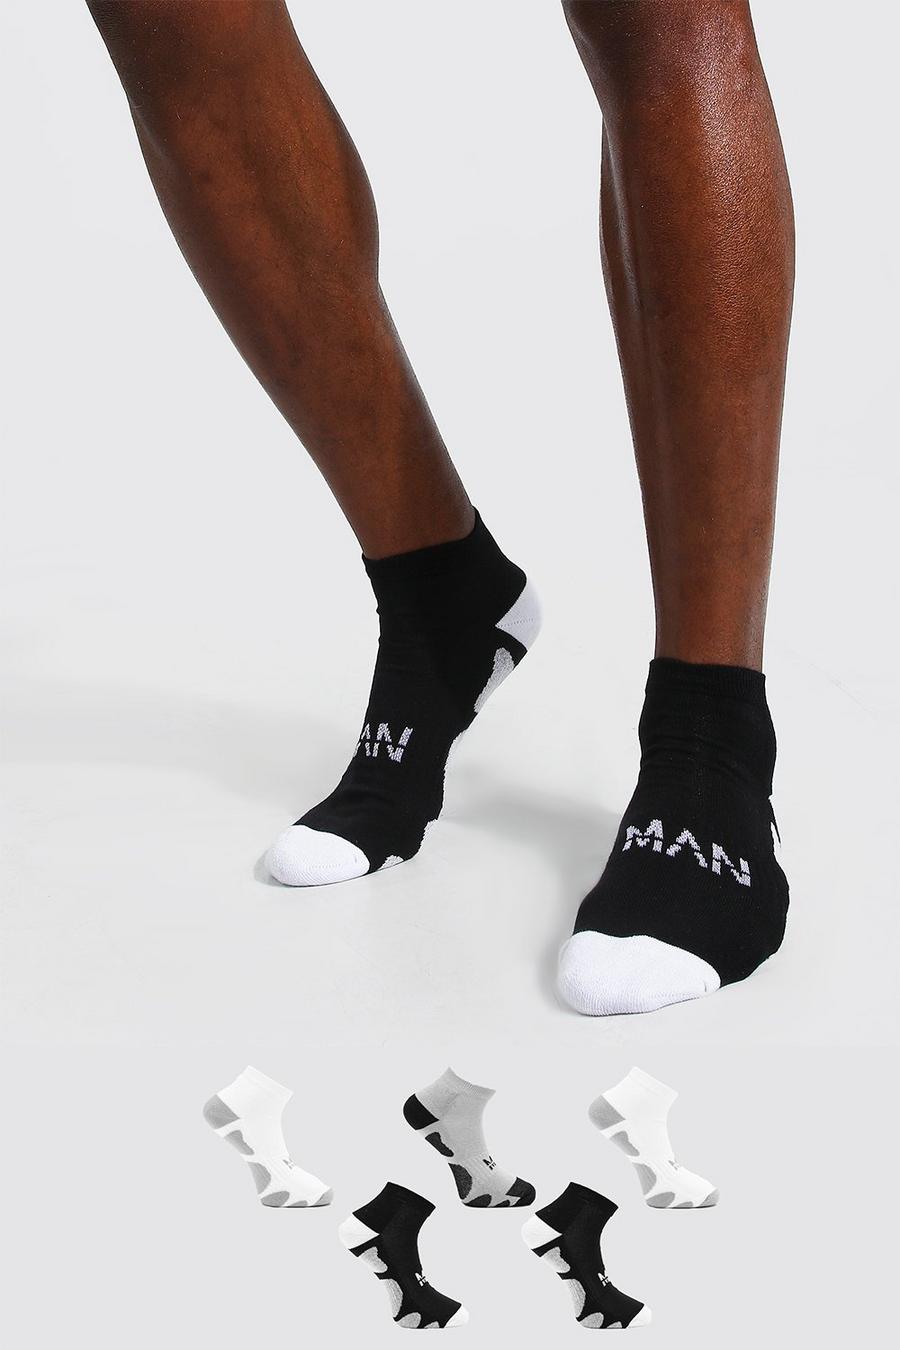 Confezione da 5 paia di calzini alla caviglia Linea sportiva MAN Dash, Multi multicolor